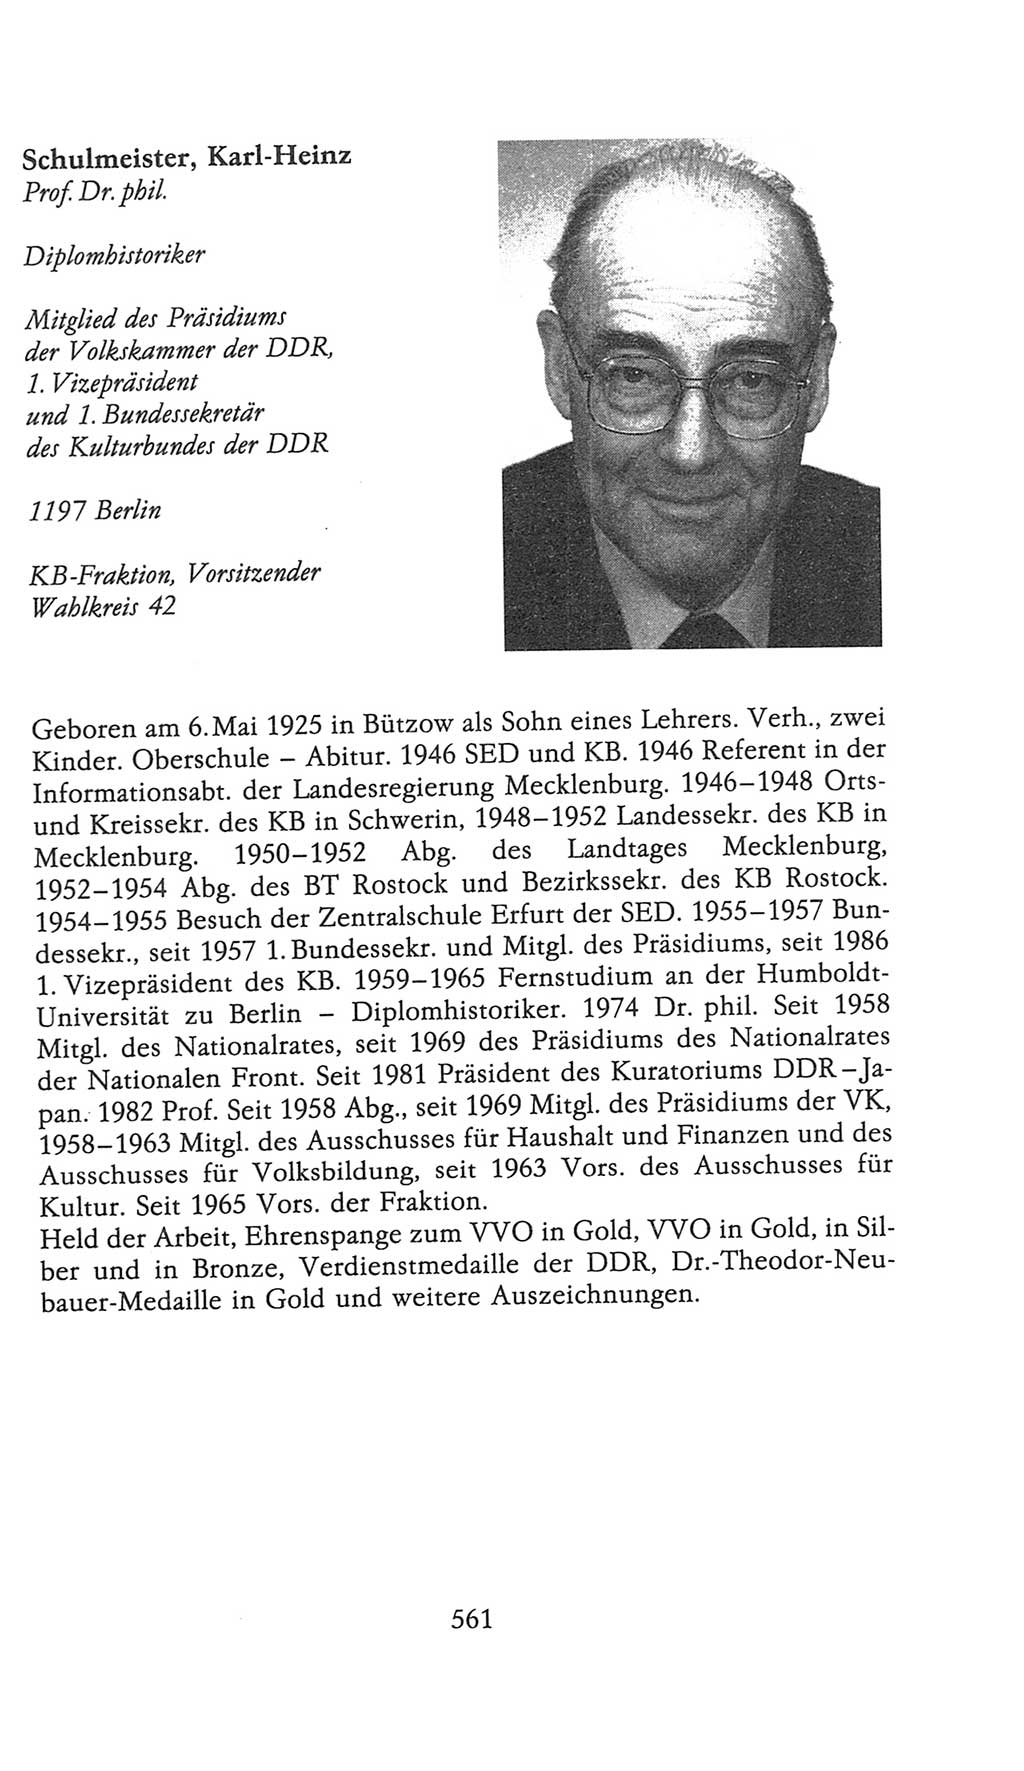 Volkskammer (VK) der Deutschen Demokratischen Republik (DDR), 9. Wahlperiode 1986-1990, Seite 561 (VK. DDR 9. WP. 1986-1990, S. 561)